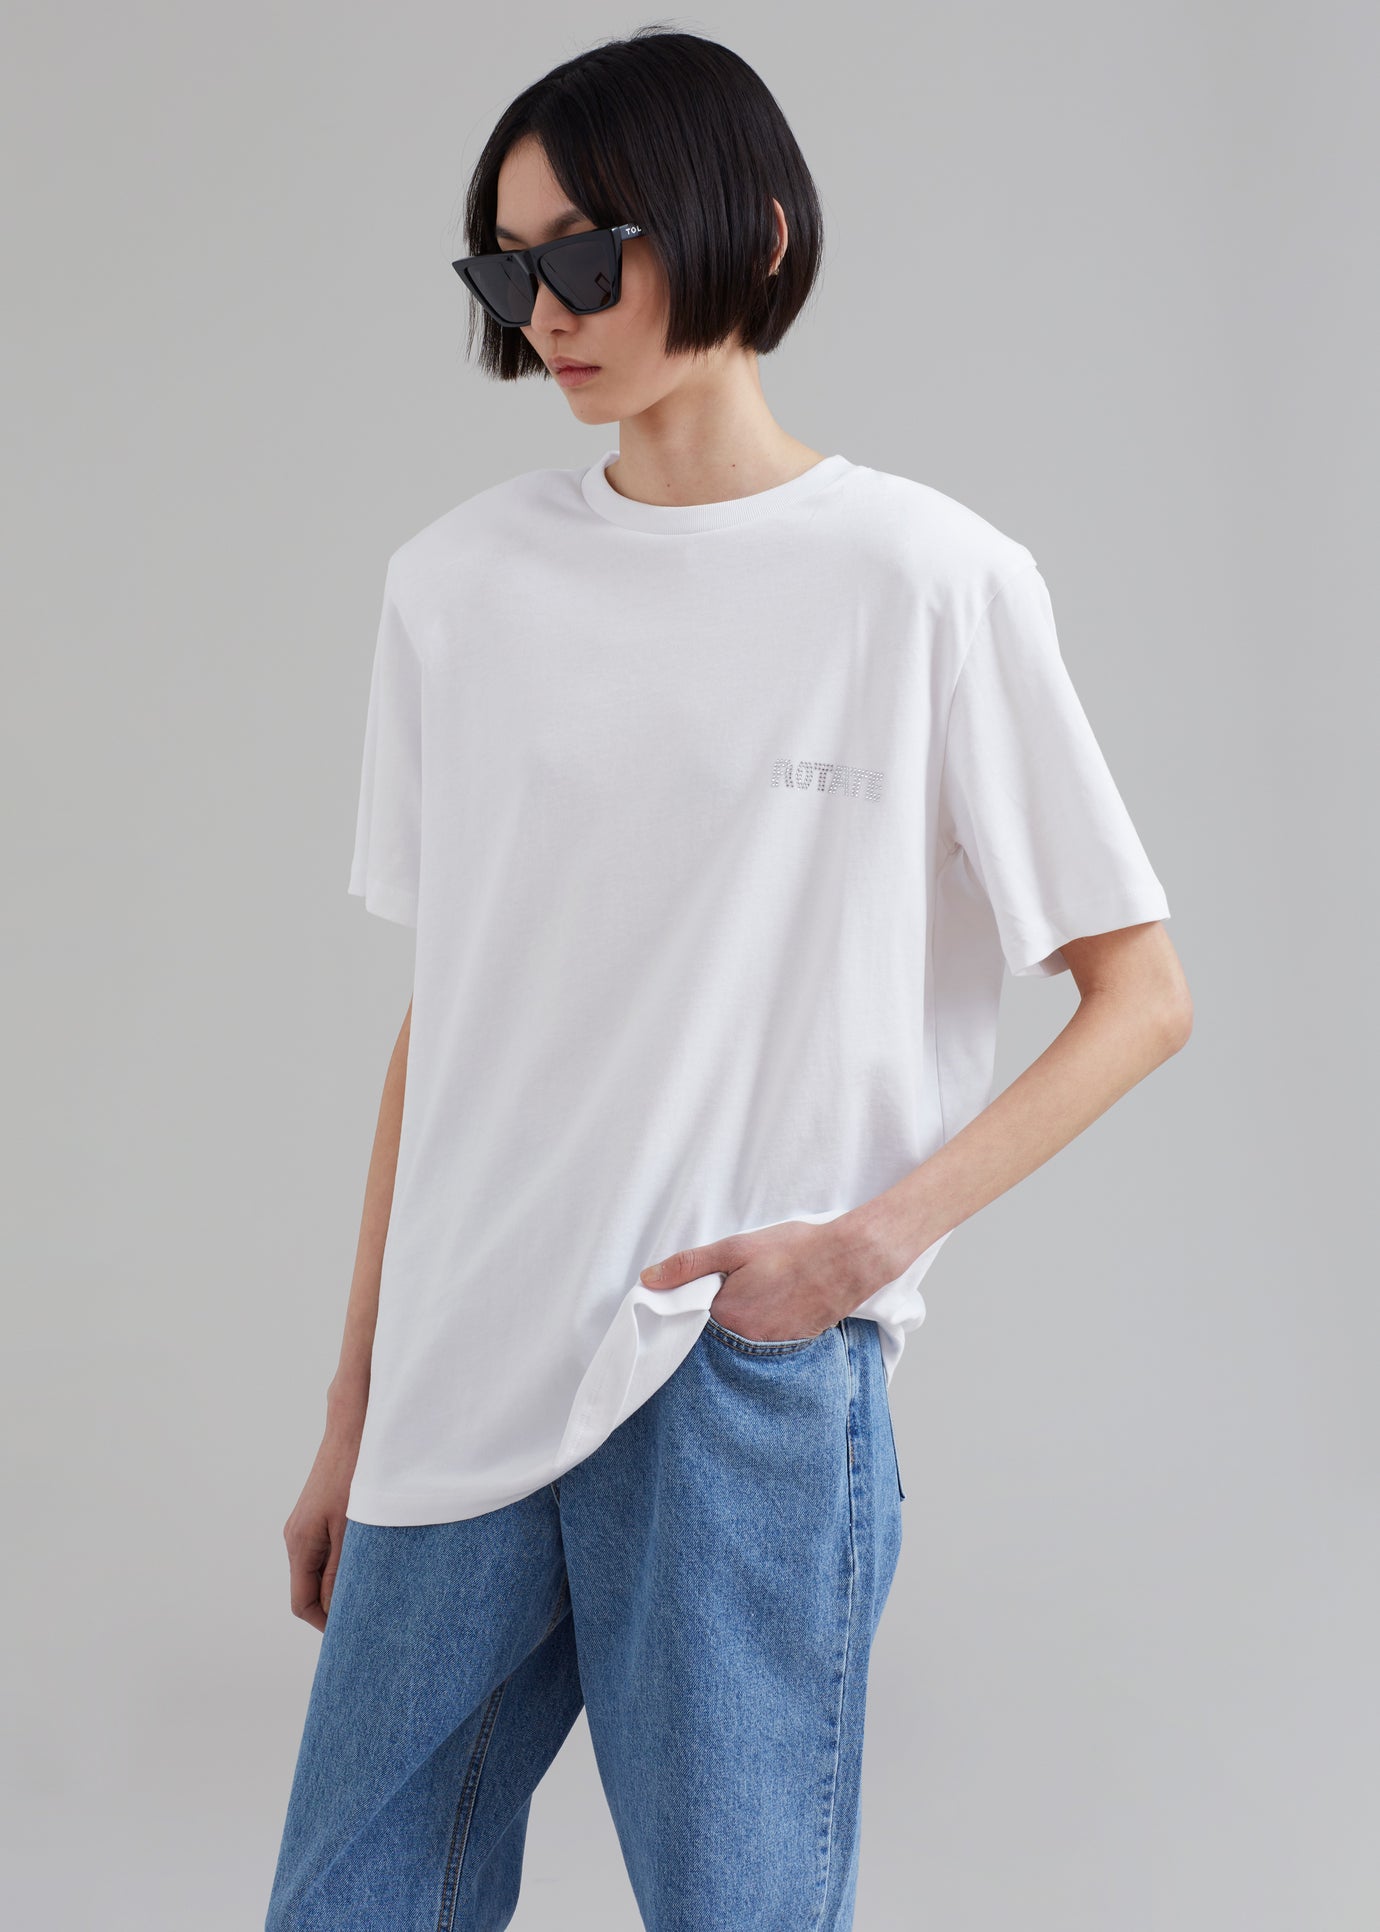 ROTATE Boxy Lasercut T-Shirt - Bright White